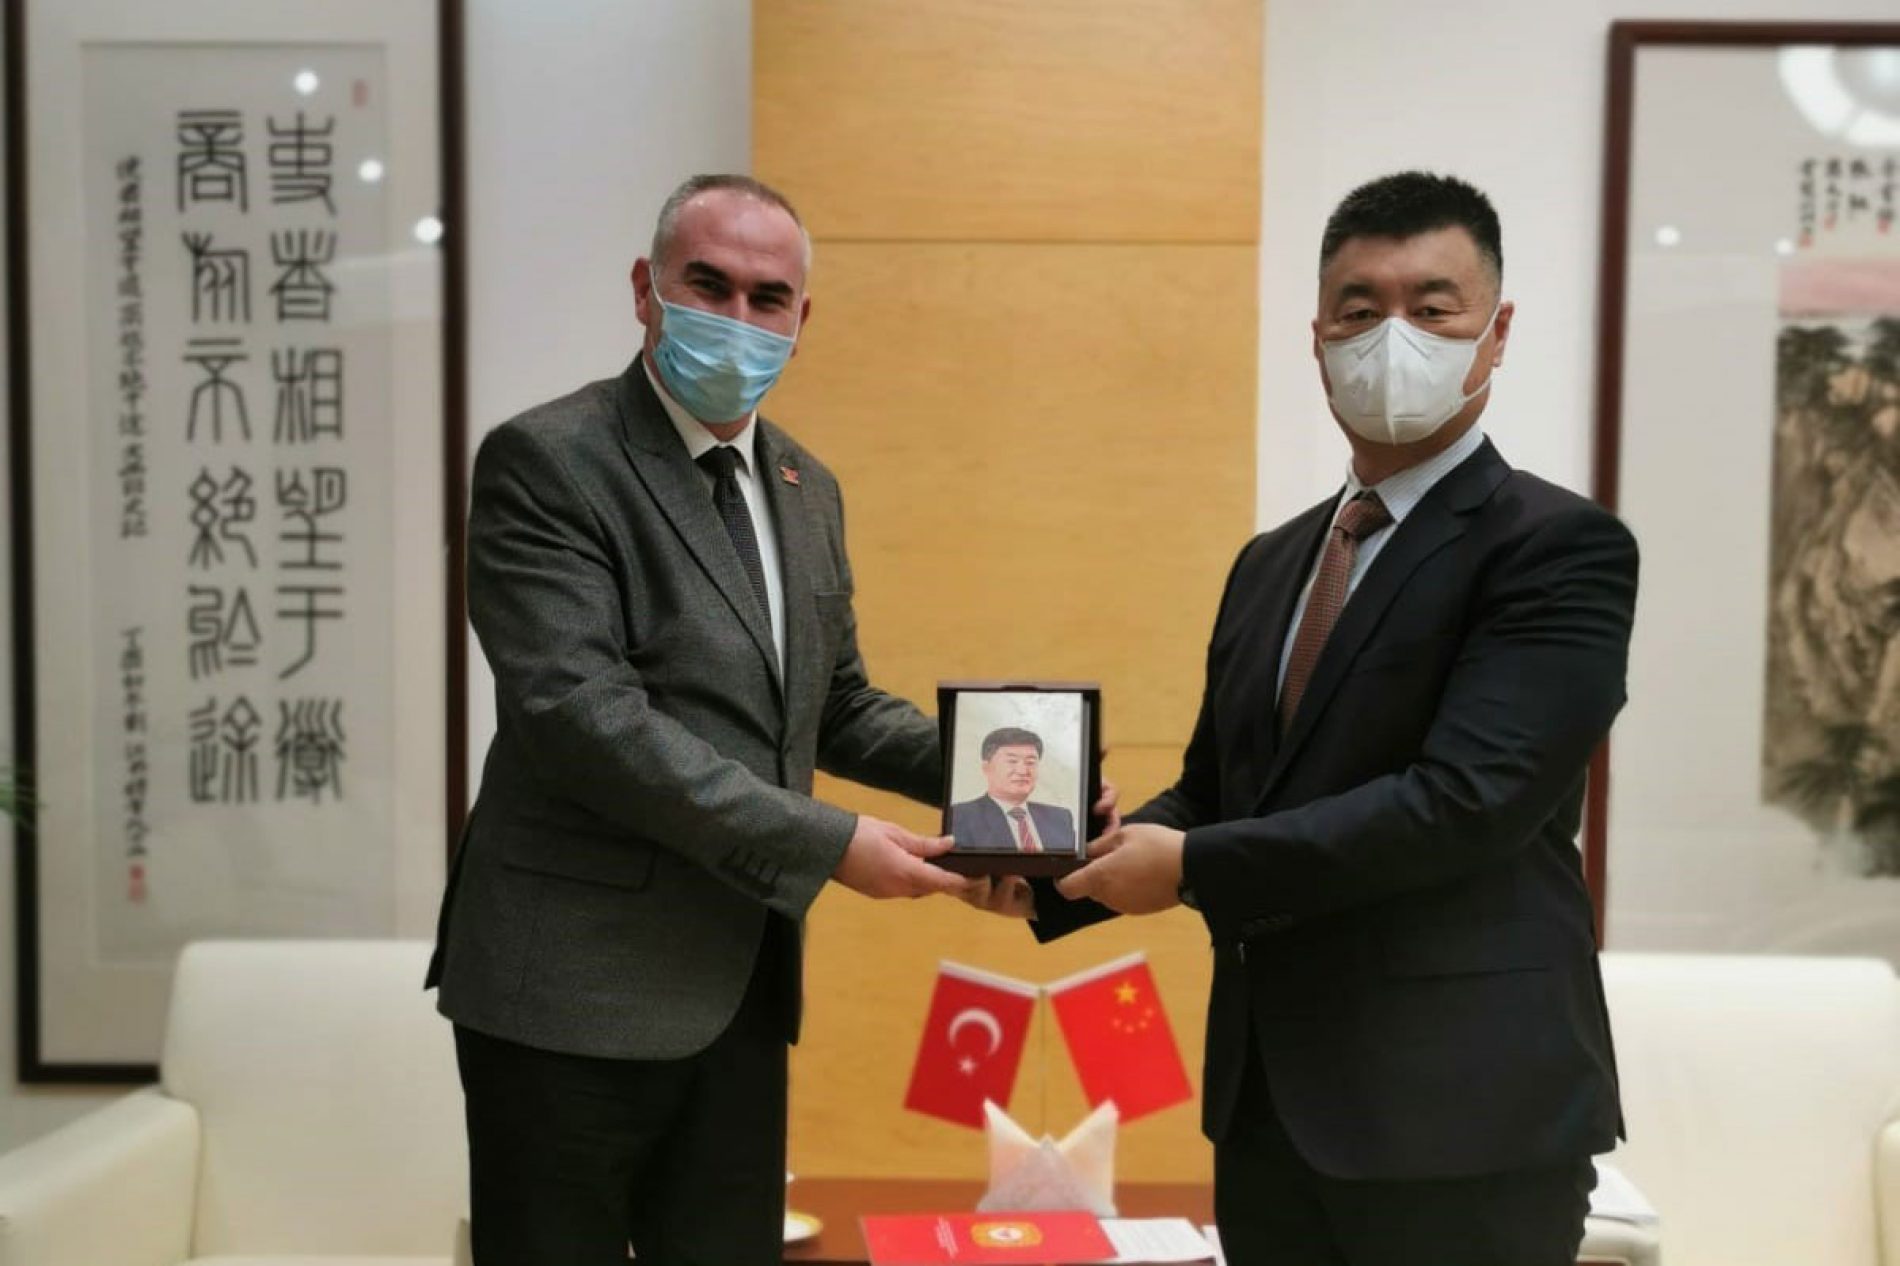 协会会长İhsan BEŞER拜访了中国驻土耳其大使馆经济商务处参赞刘毓骅